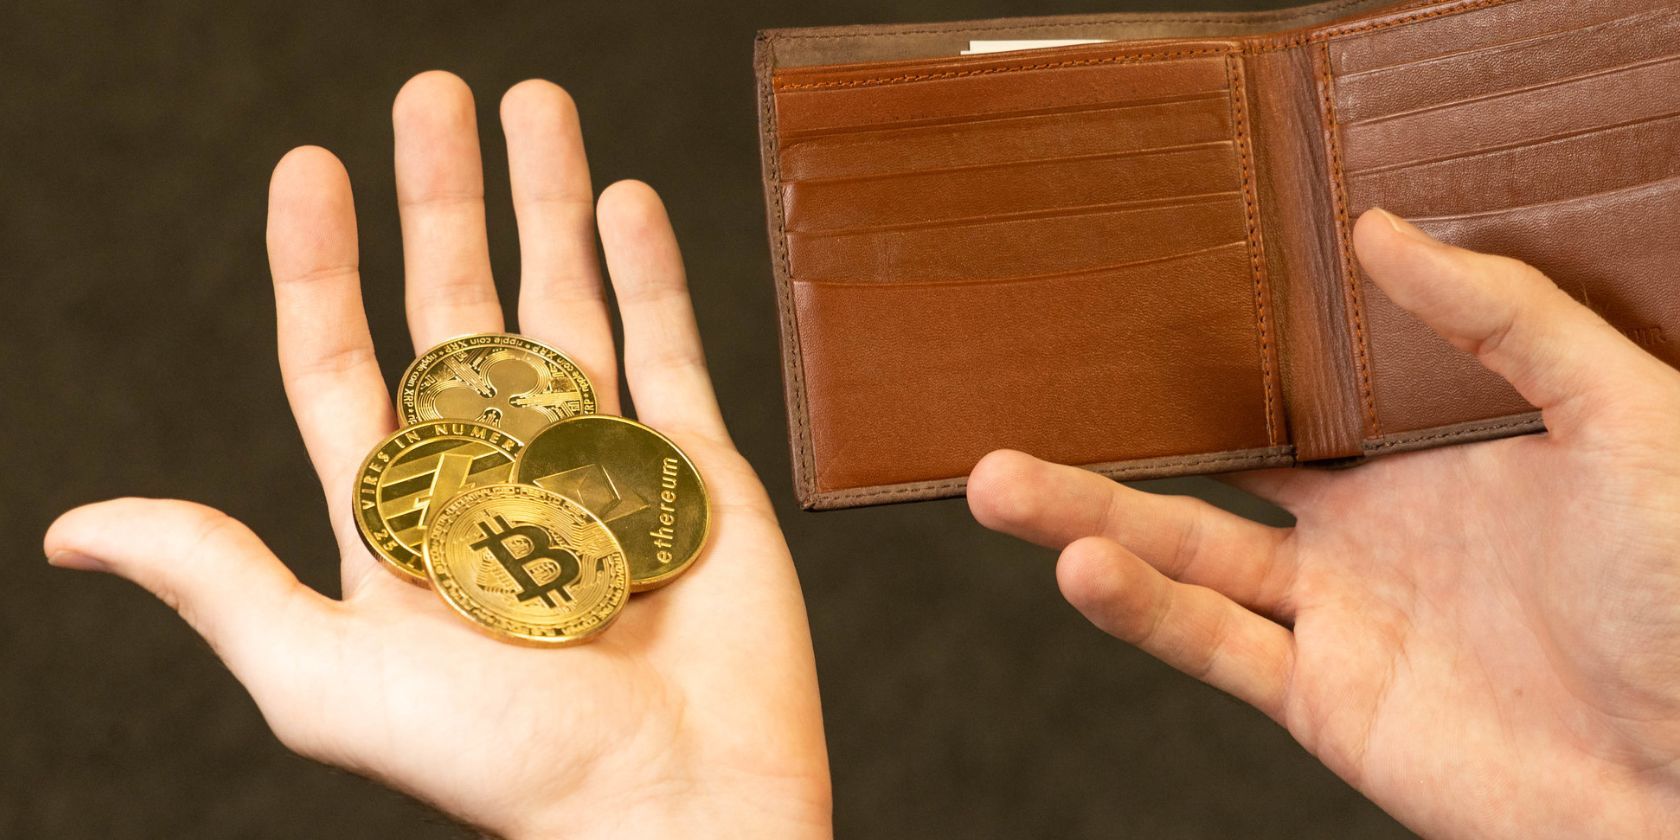 persona con monedas criptográficas en una mano y una billetera de cuero en la otra